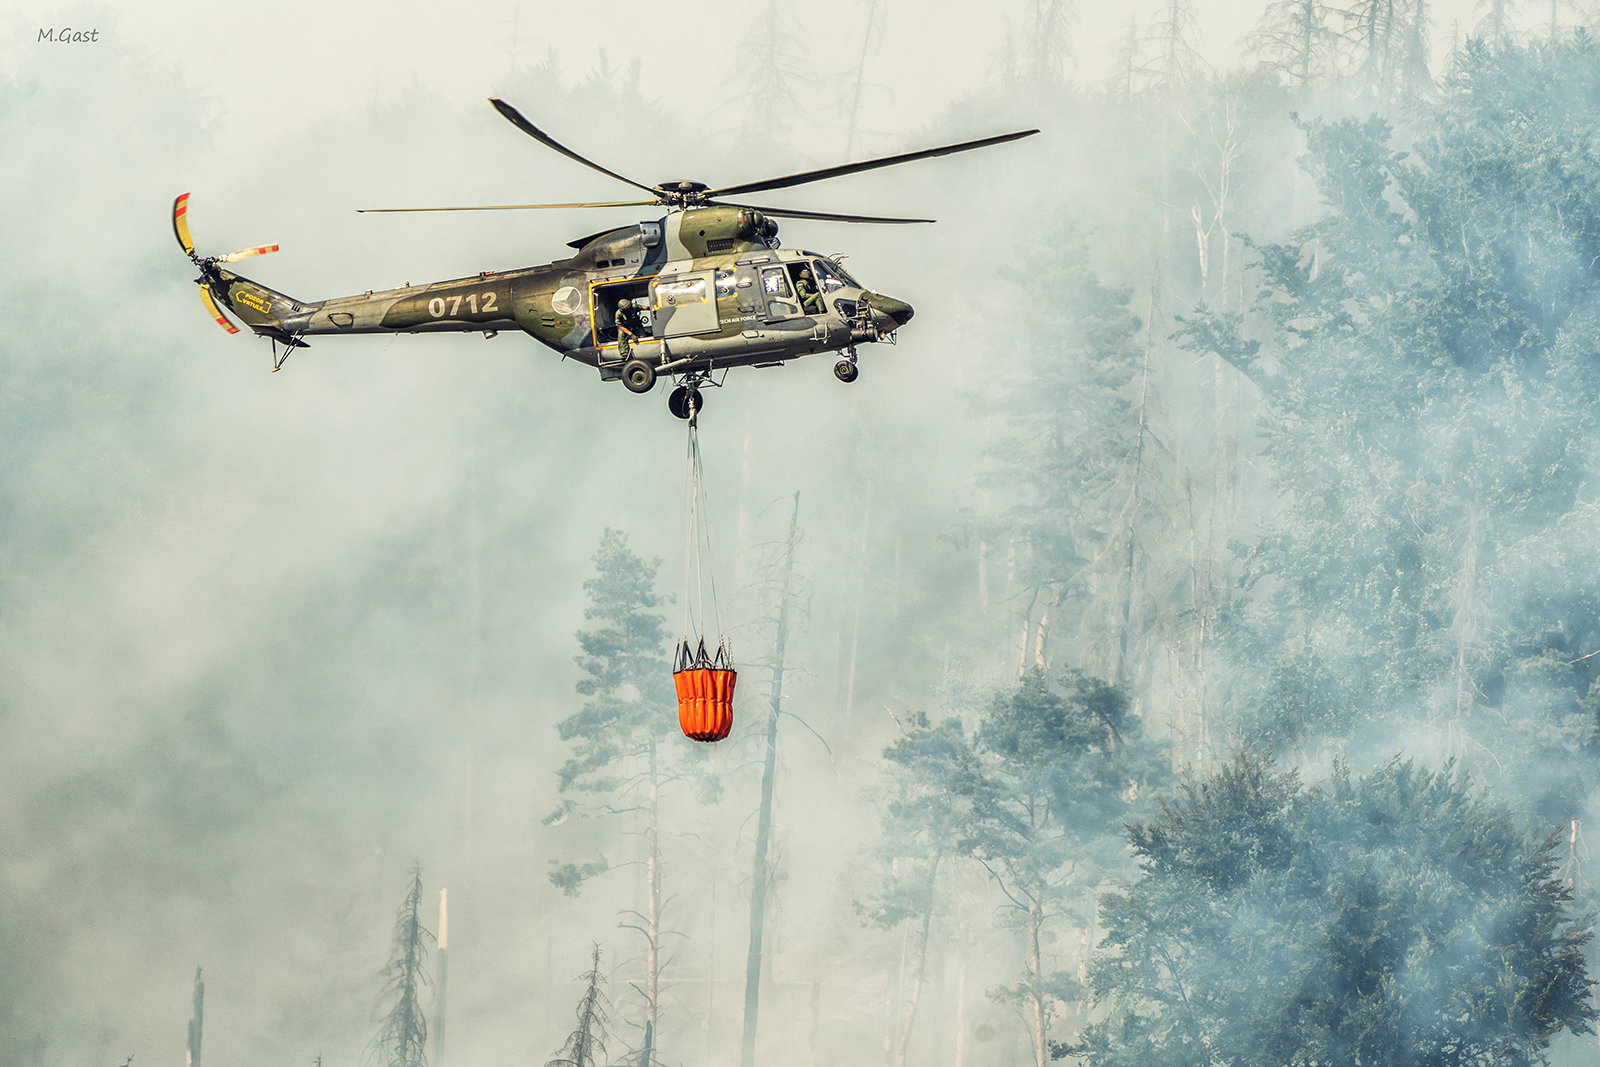 Bilder von den Waldbränden und Einsatzkräften in der Böhmischen und Sächsischen Schweiz